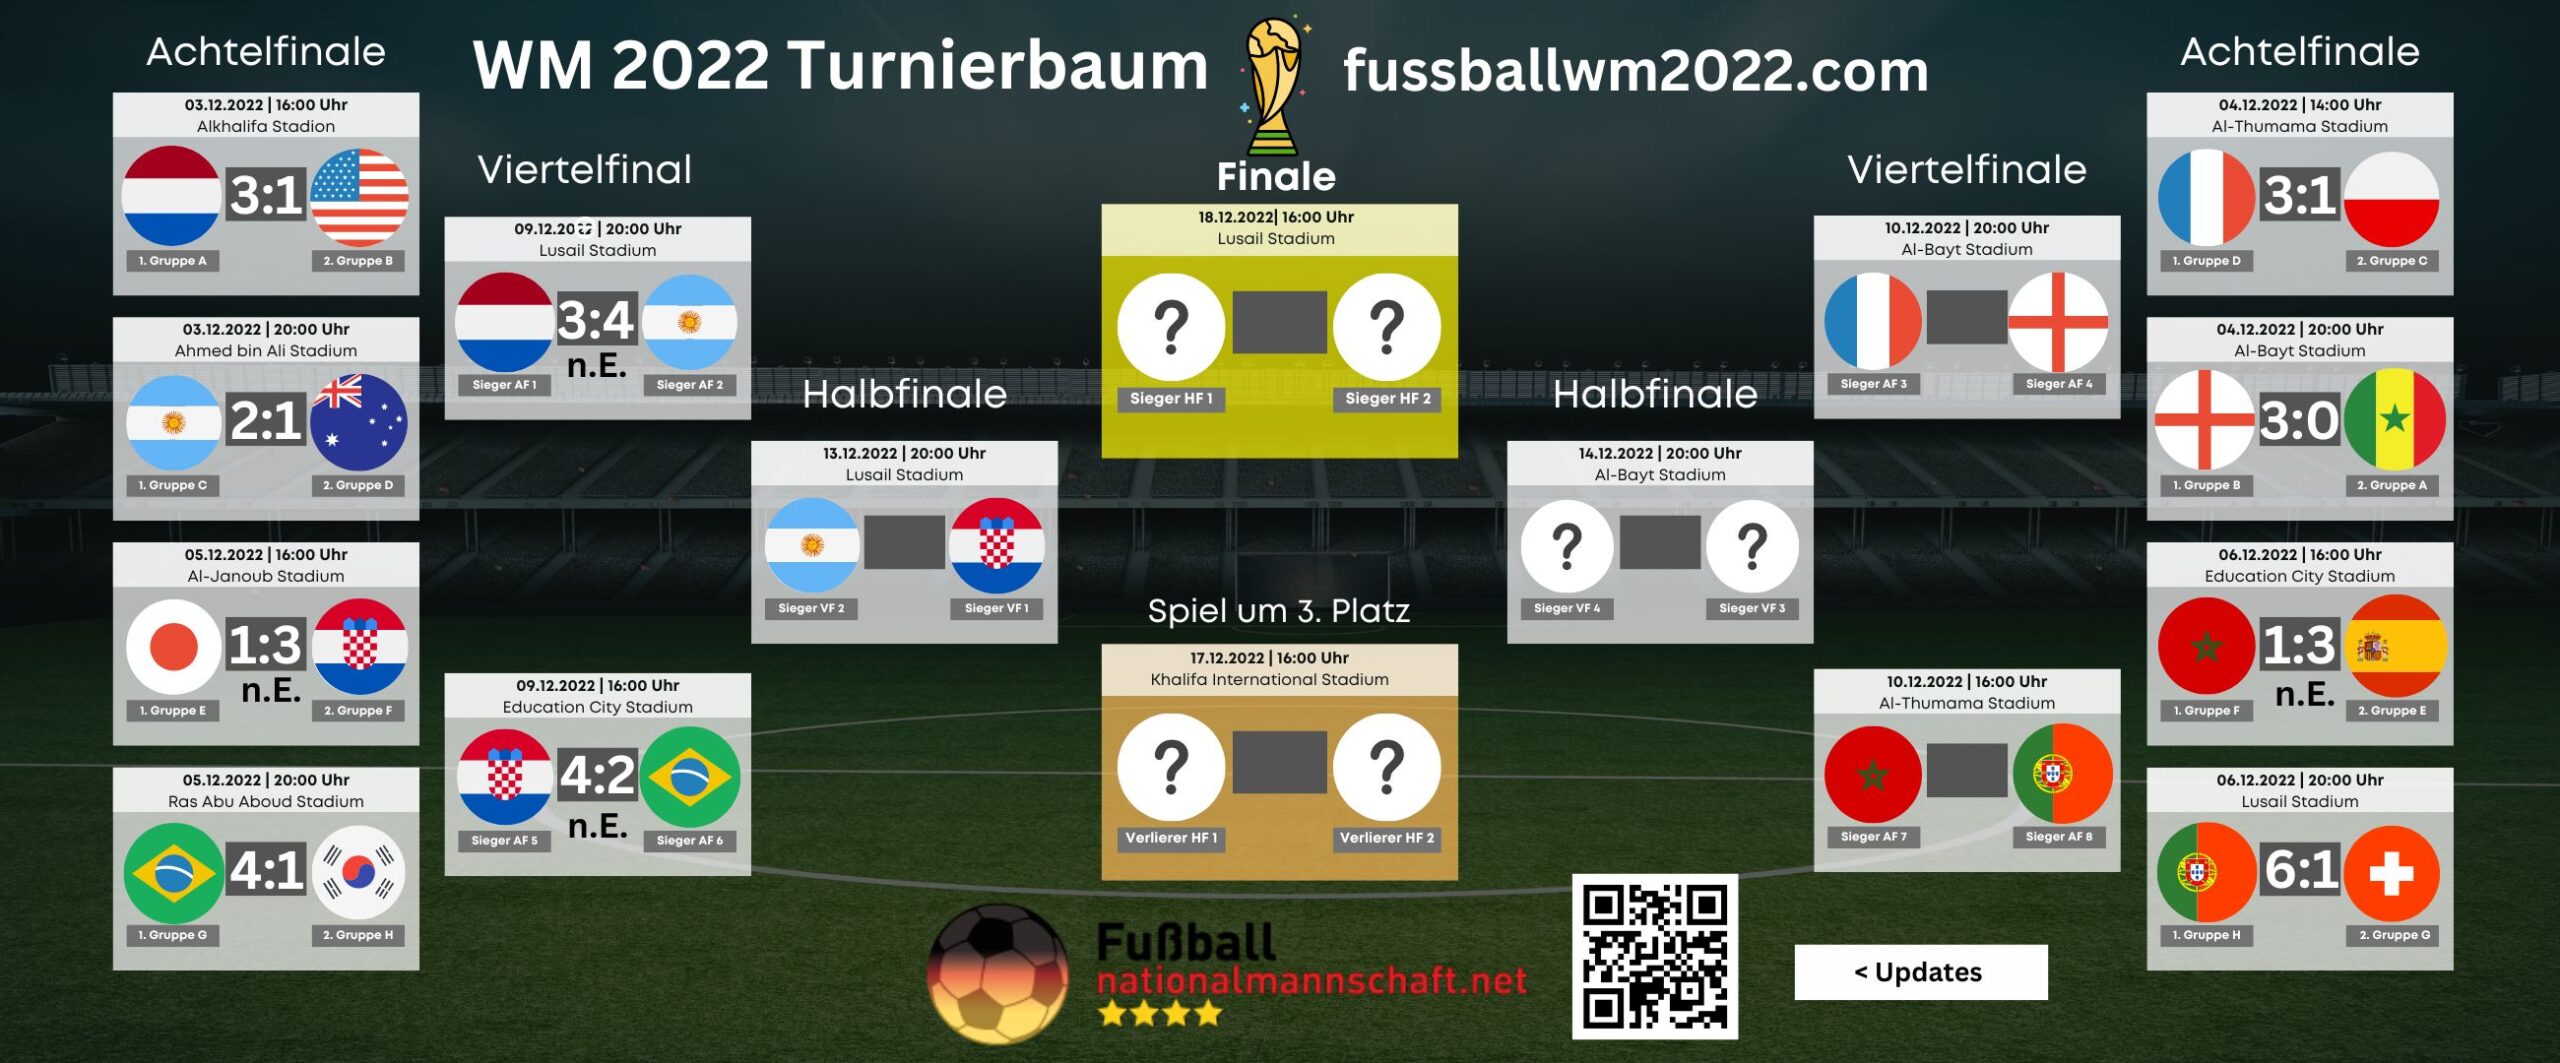 WM 2022 Turnierbaum heute * WM Viertelfinale and Ausblick auf WM Halbfinale